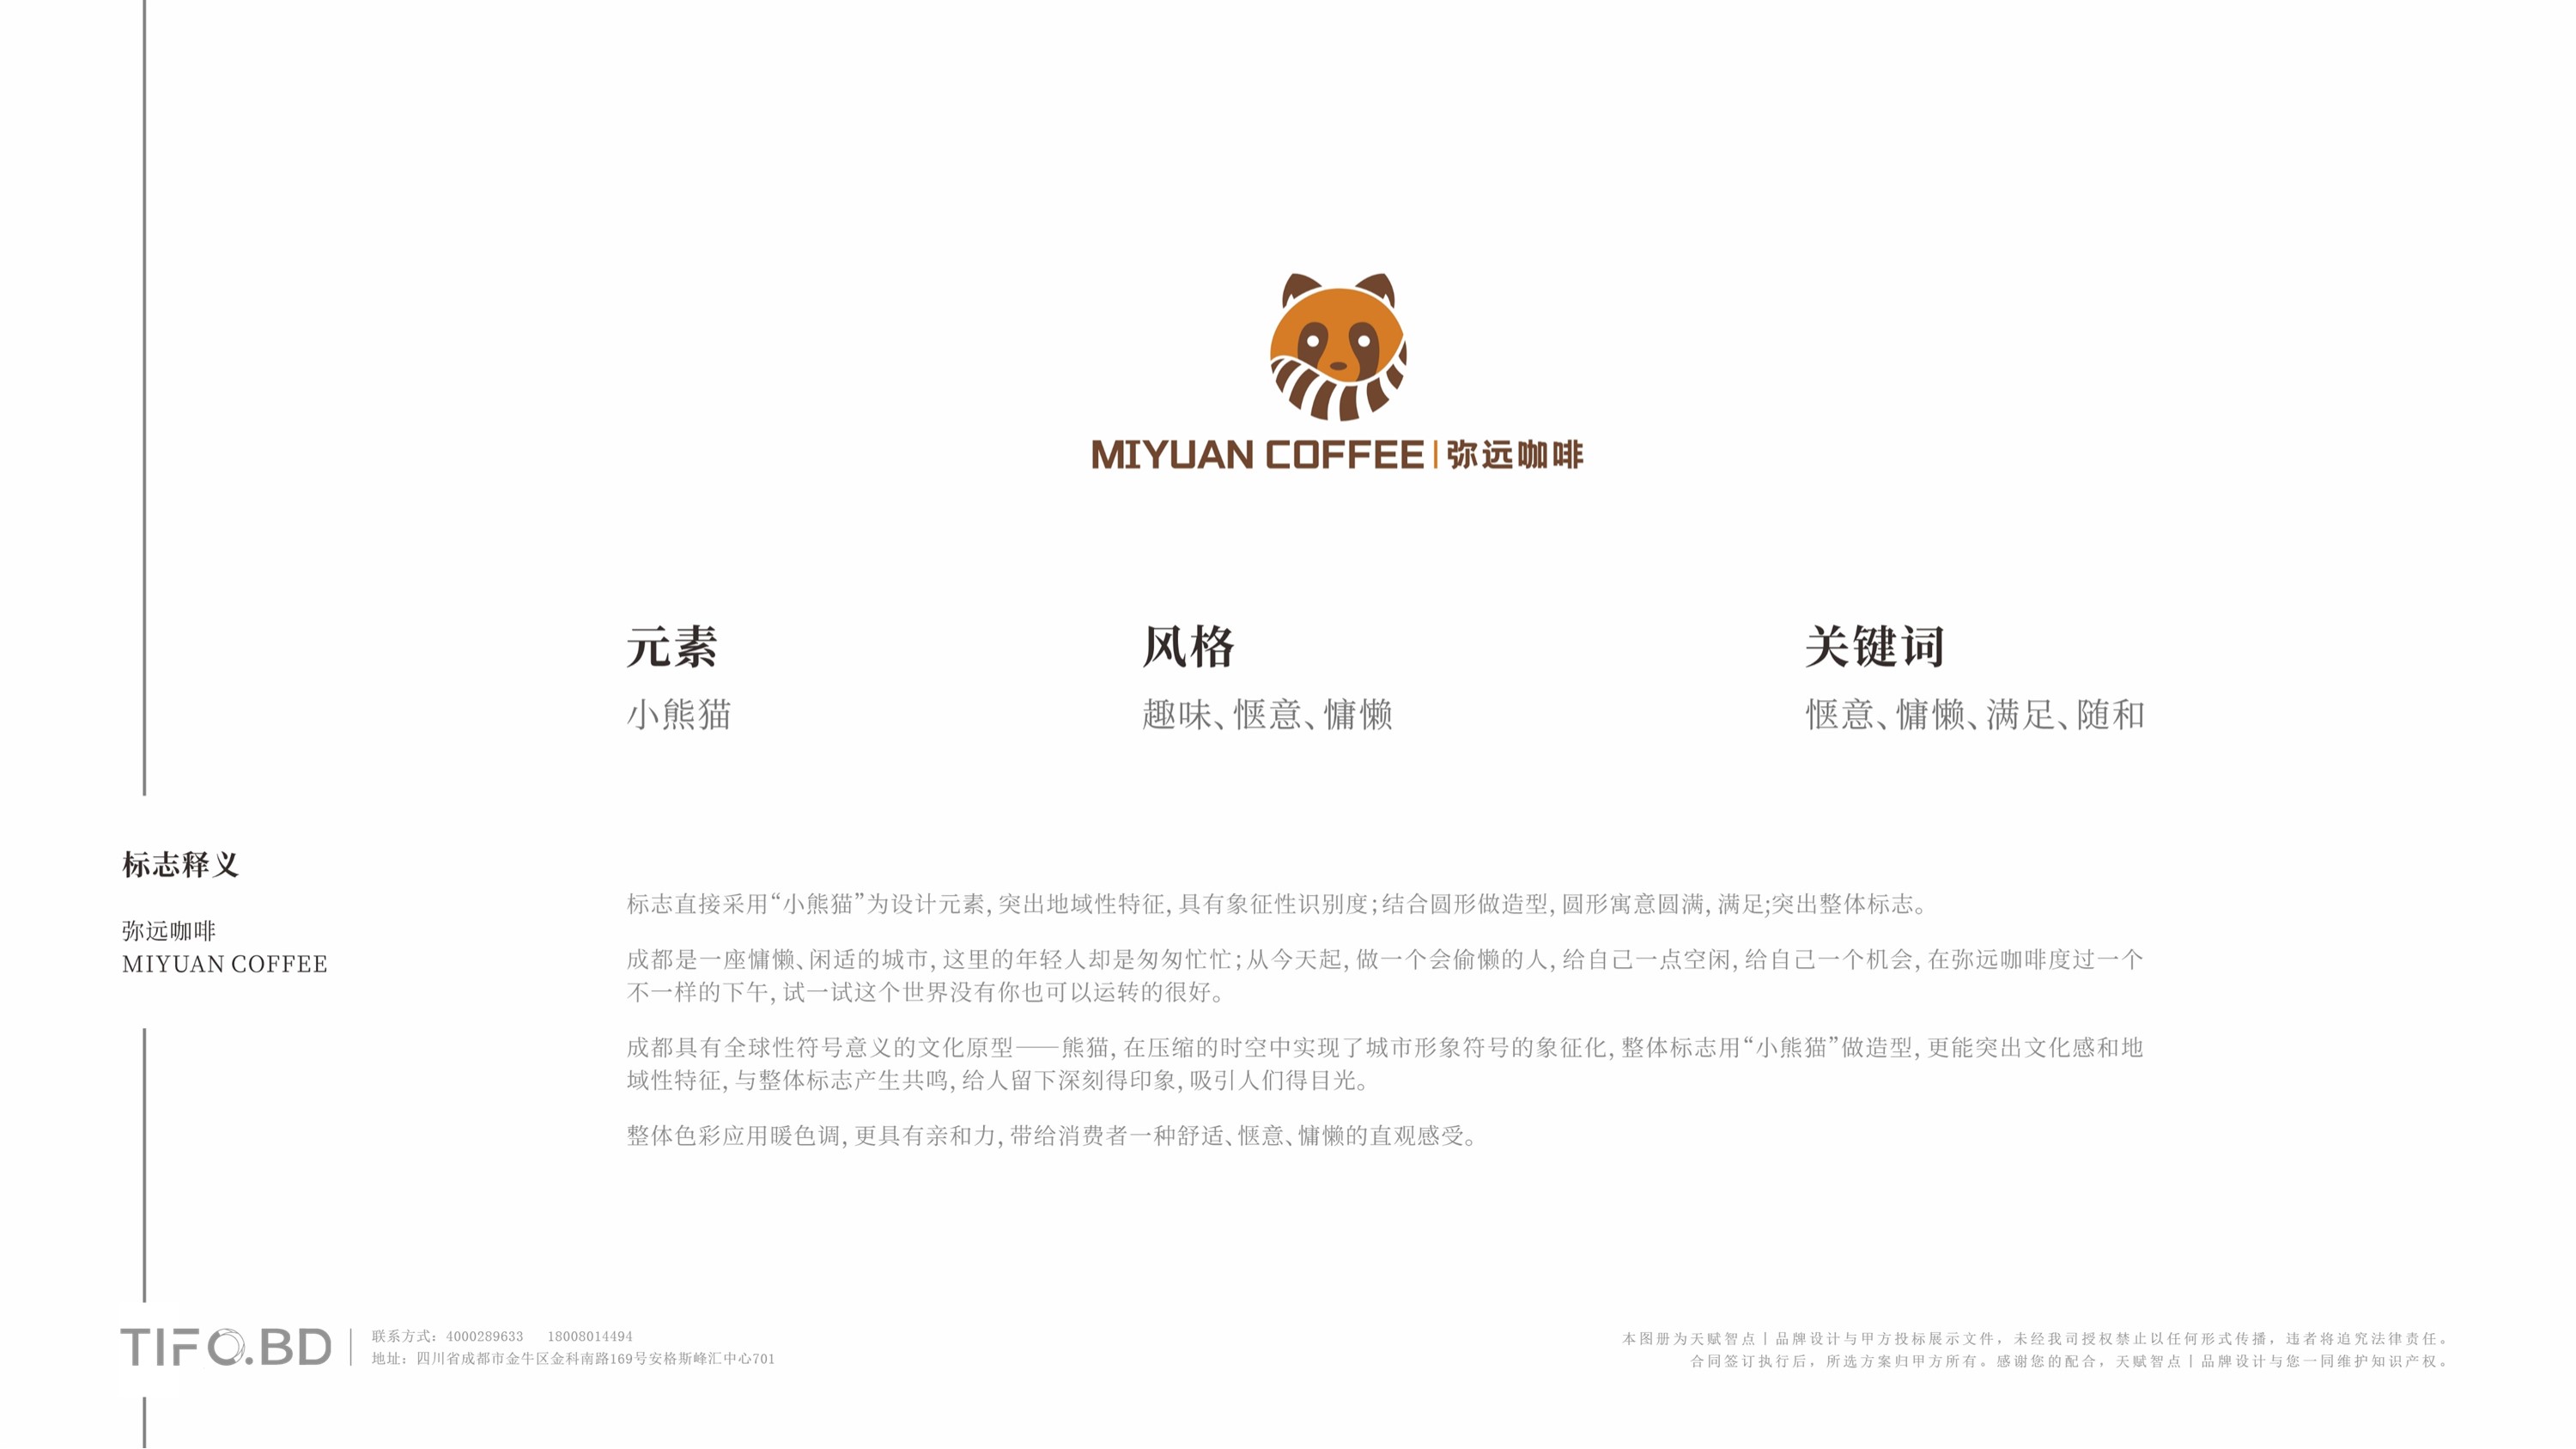 咖啡餐饮品牌全案设计 (33).jpg